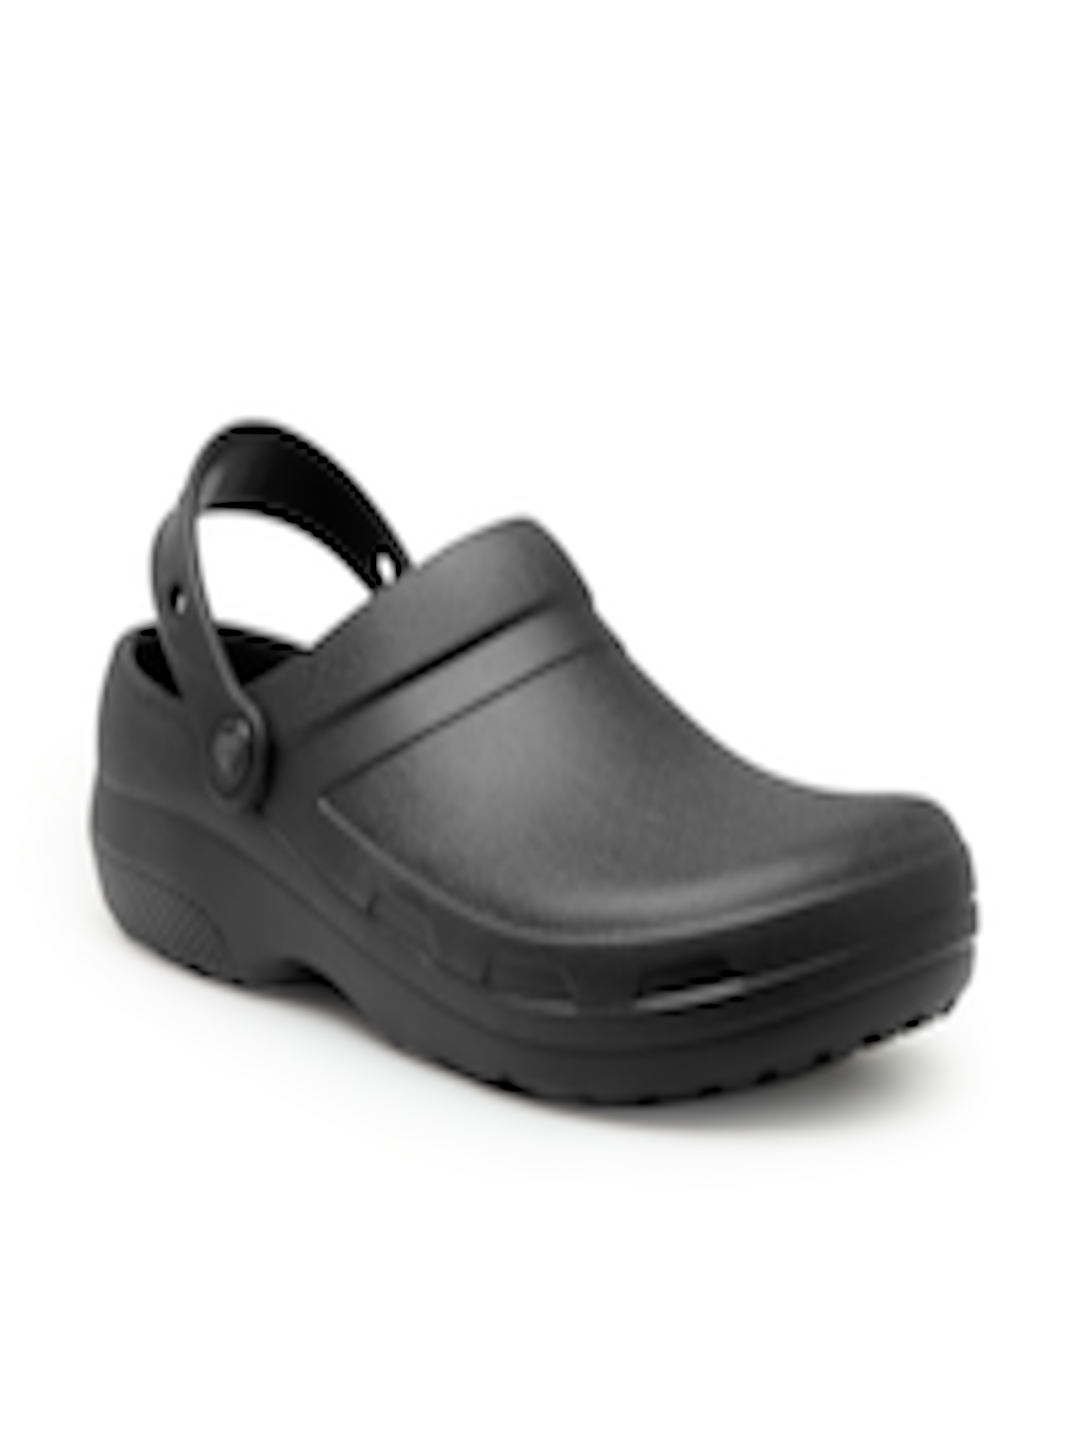 Buy Crocs Men Black Specialist II Clogs - Sandals for Men 4626276 | Myntra